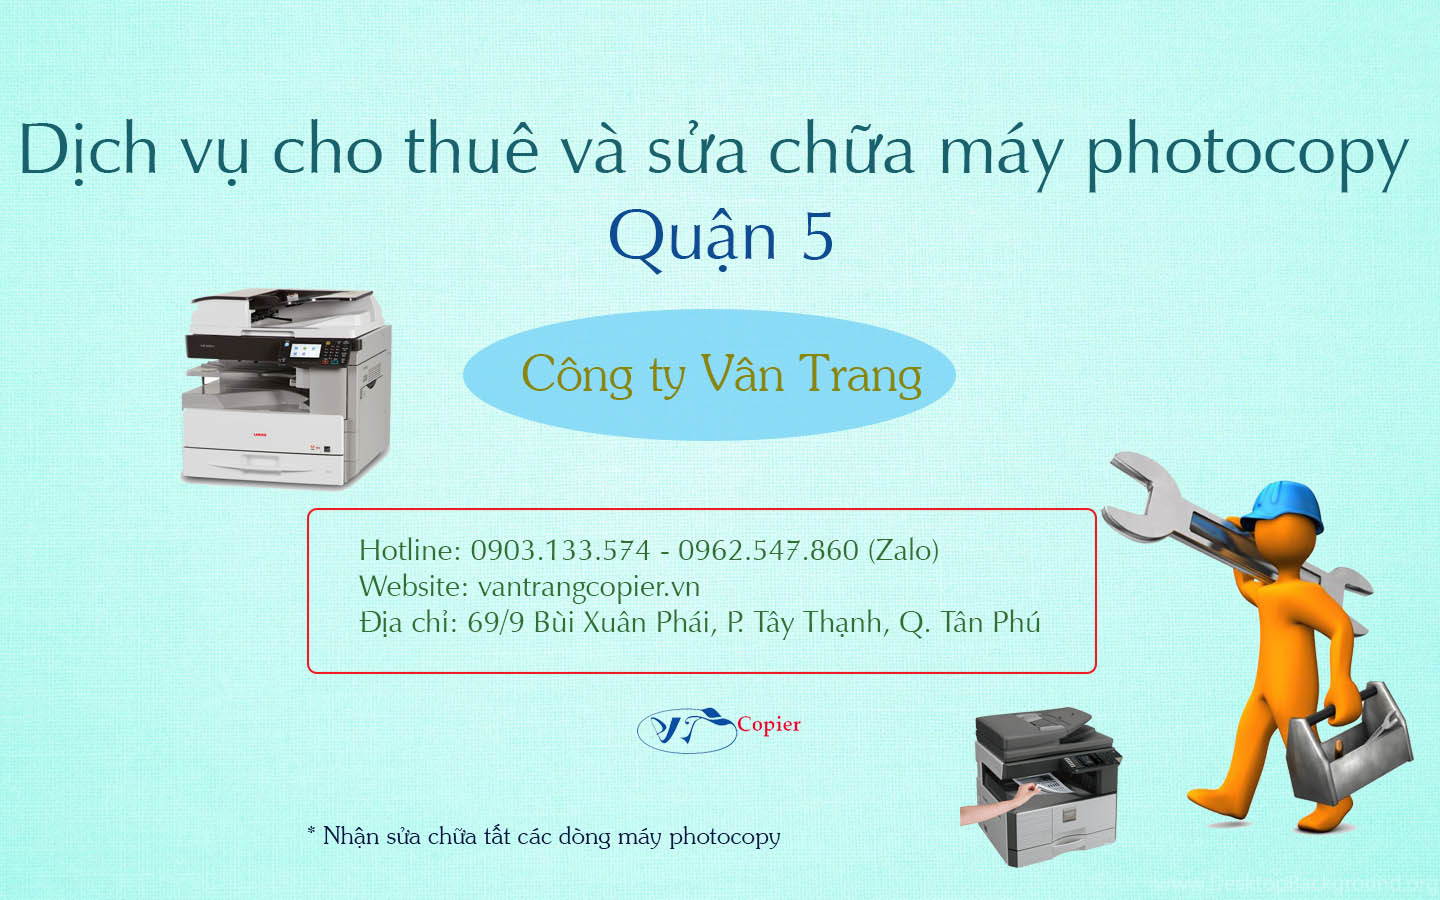 dich-vu-cho-thue-va-sua-chua-may-photocopy-quan-5-cong-ty-van-trang.jpg